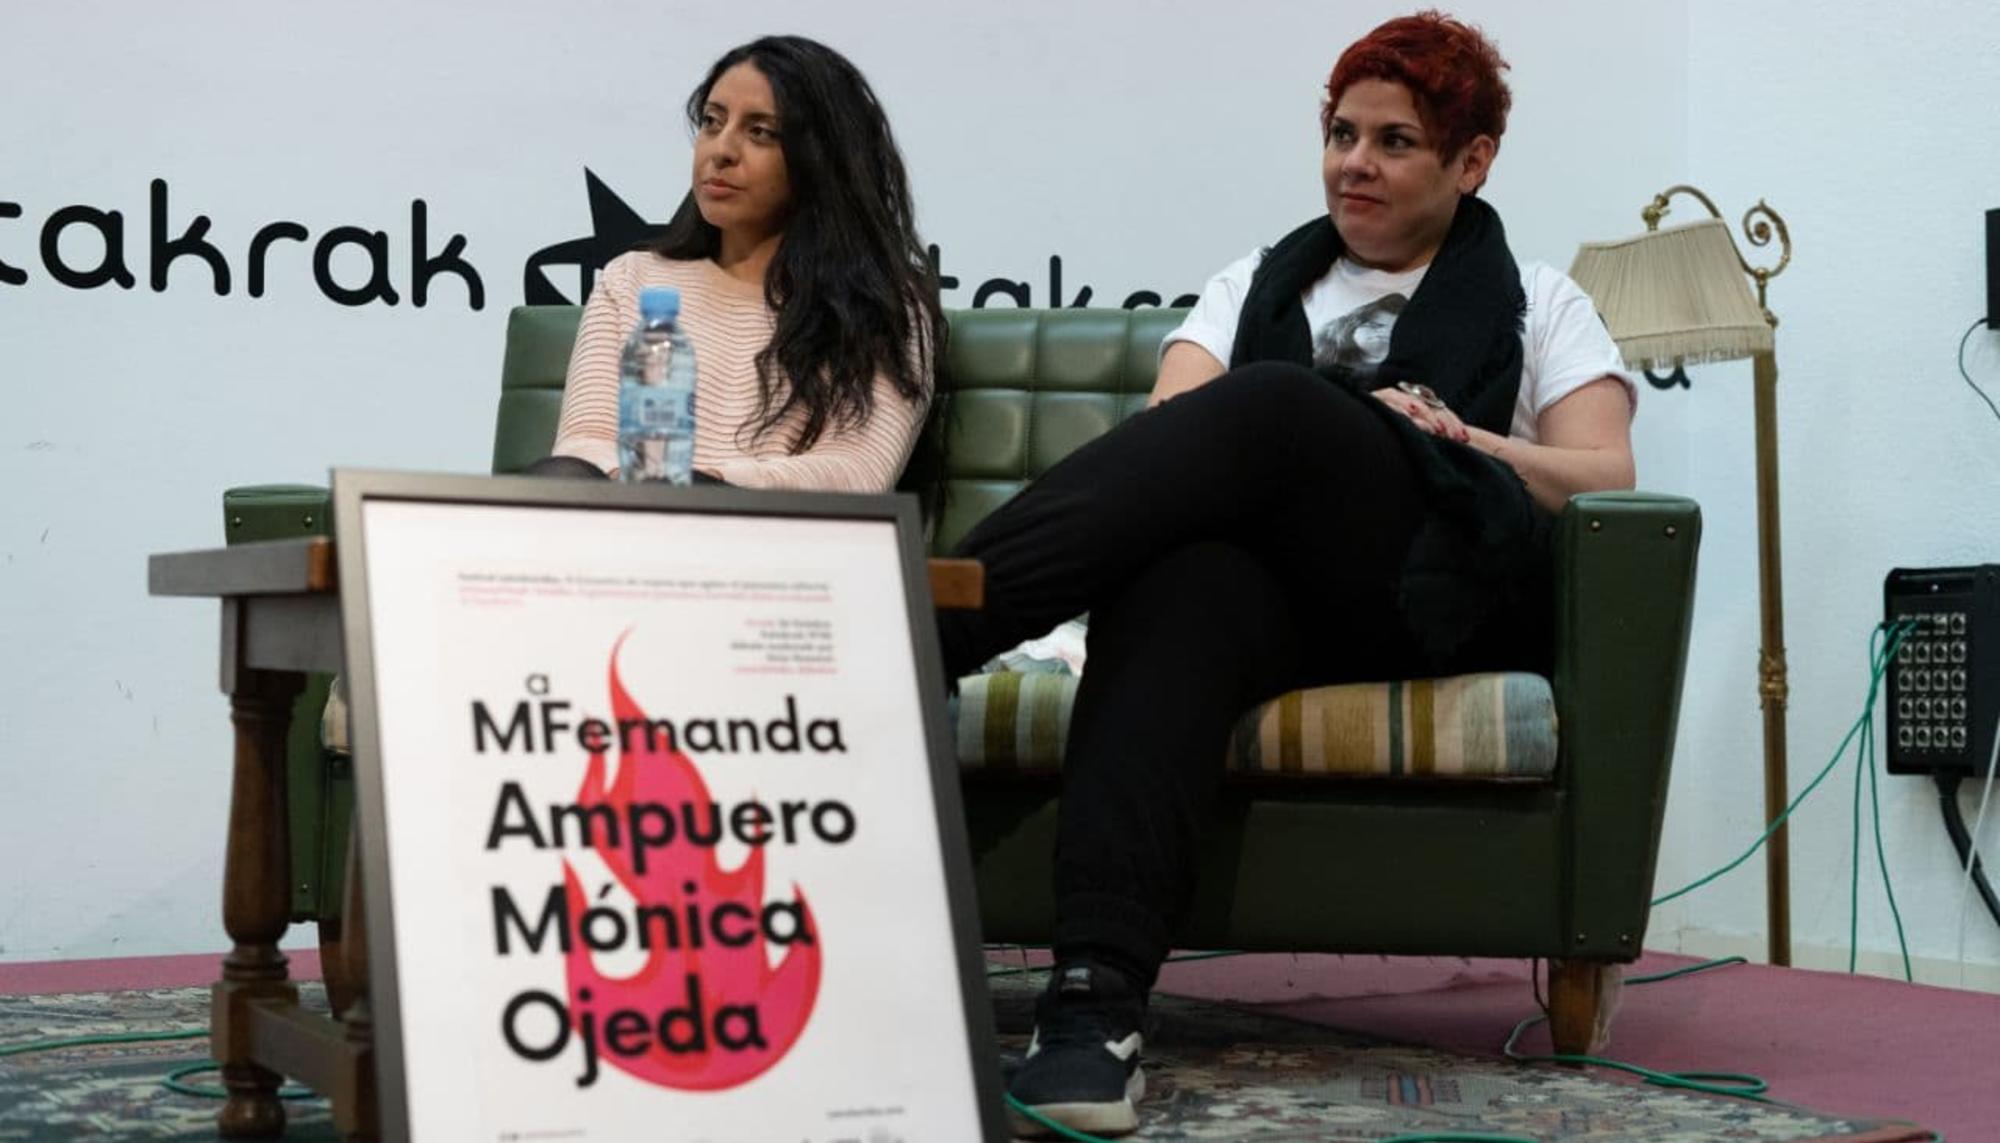 María Fernanda Ampuero y Mónica Ojeda en el Festival Letraheridas, celebrado en el centro social Katakrak de Iruñea